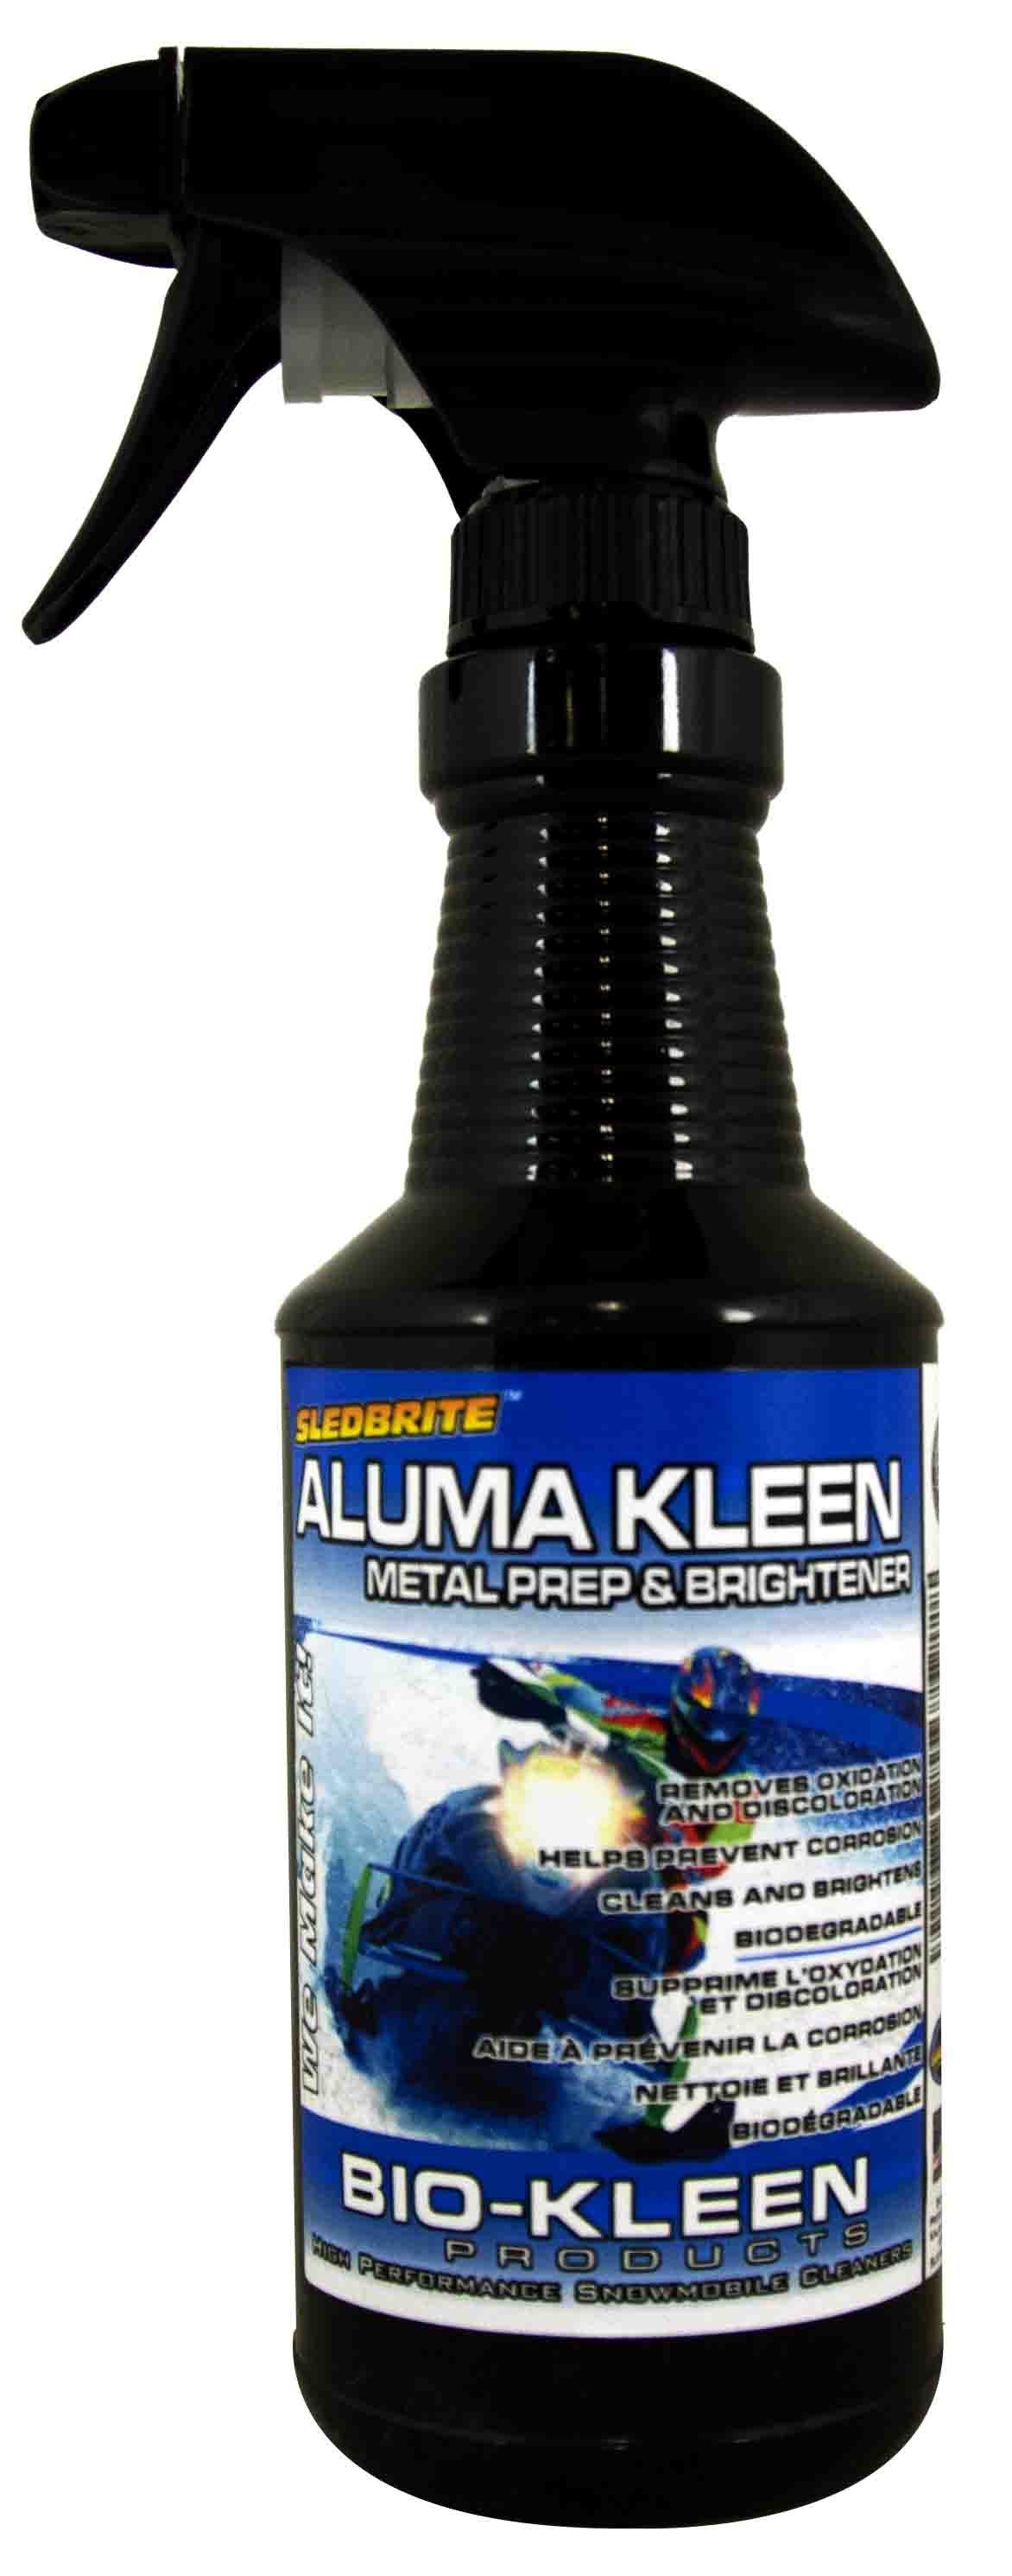 Bio-Kleen S07009 SledBrite Aluma Kleen - 1 Gallon